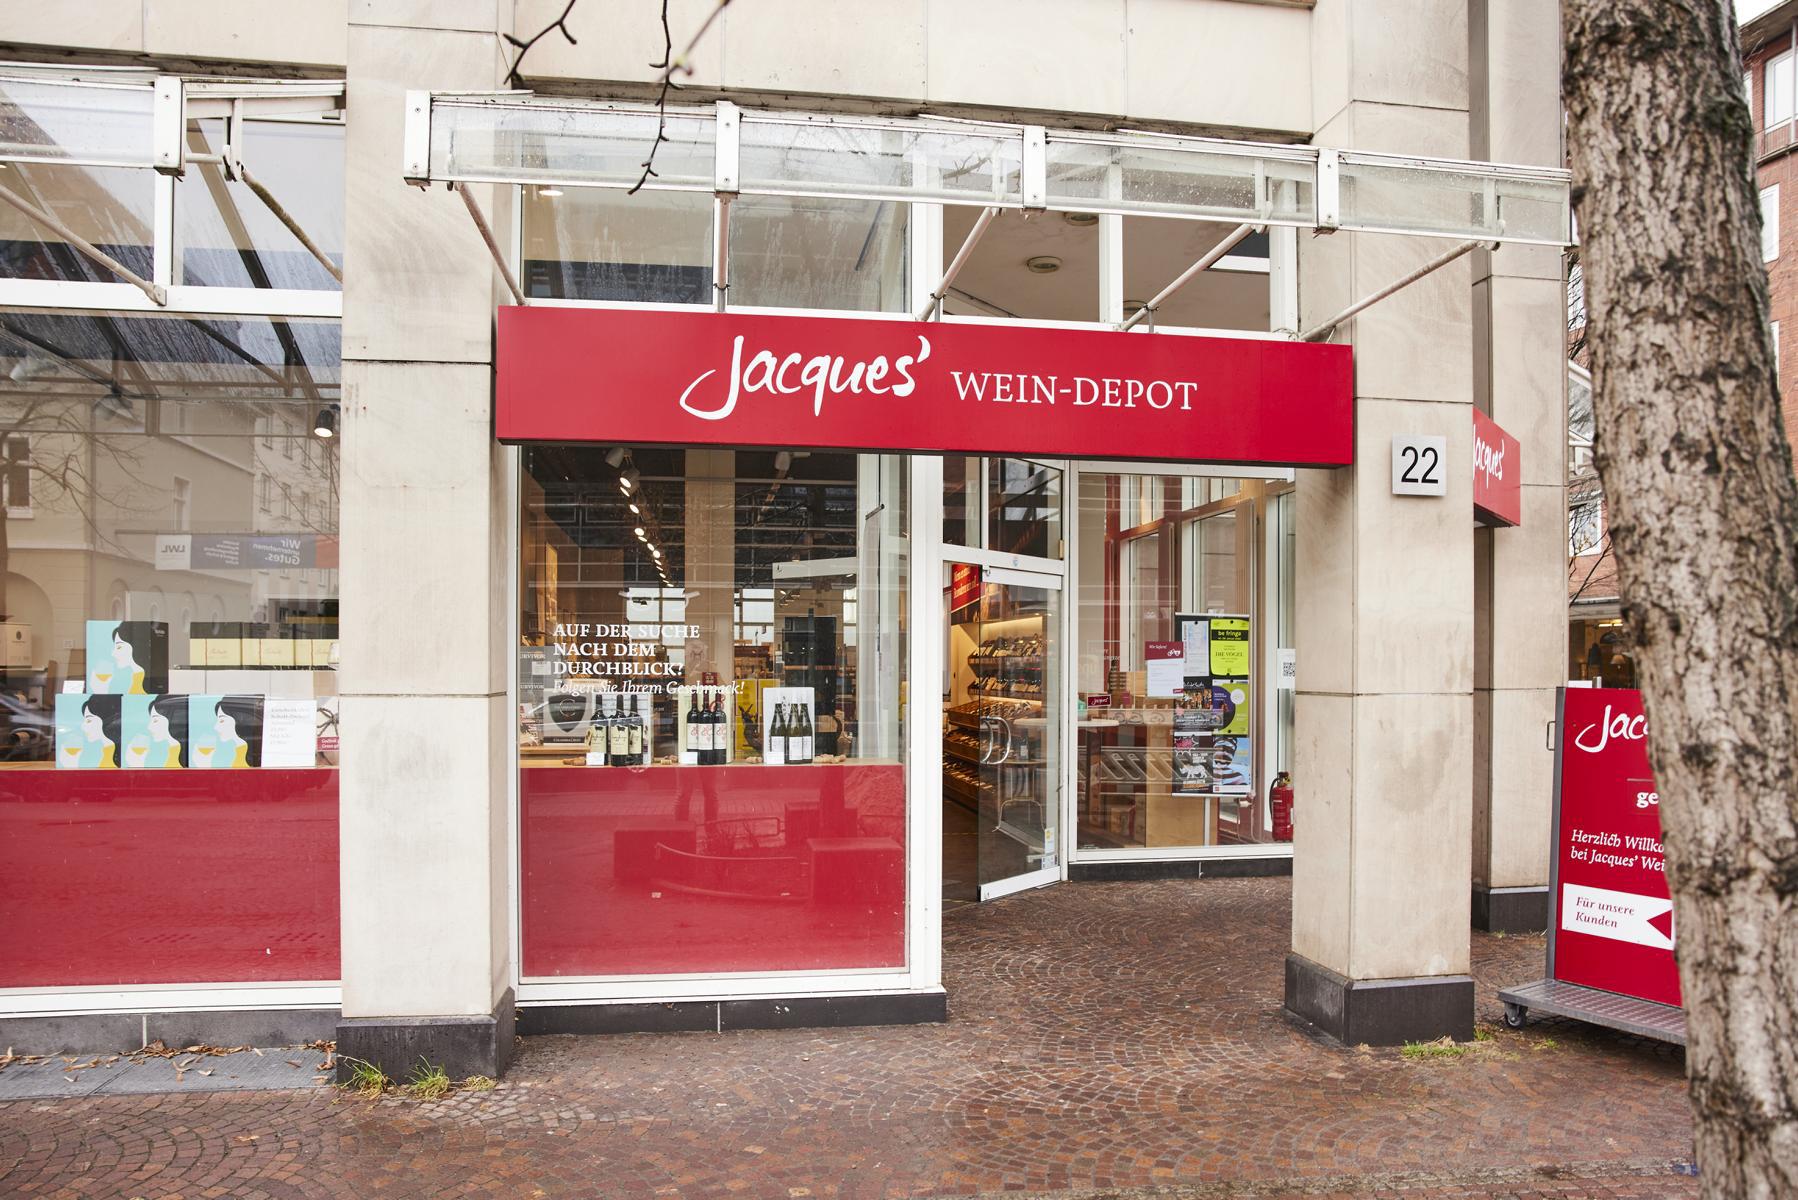 Jacques’ Wein-Depot Münster-Mauritz, Warendorfer Straße 22 in Münster